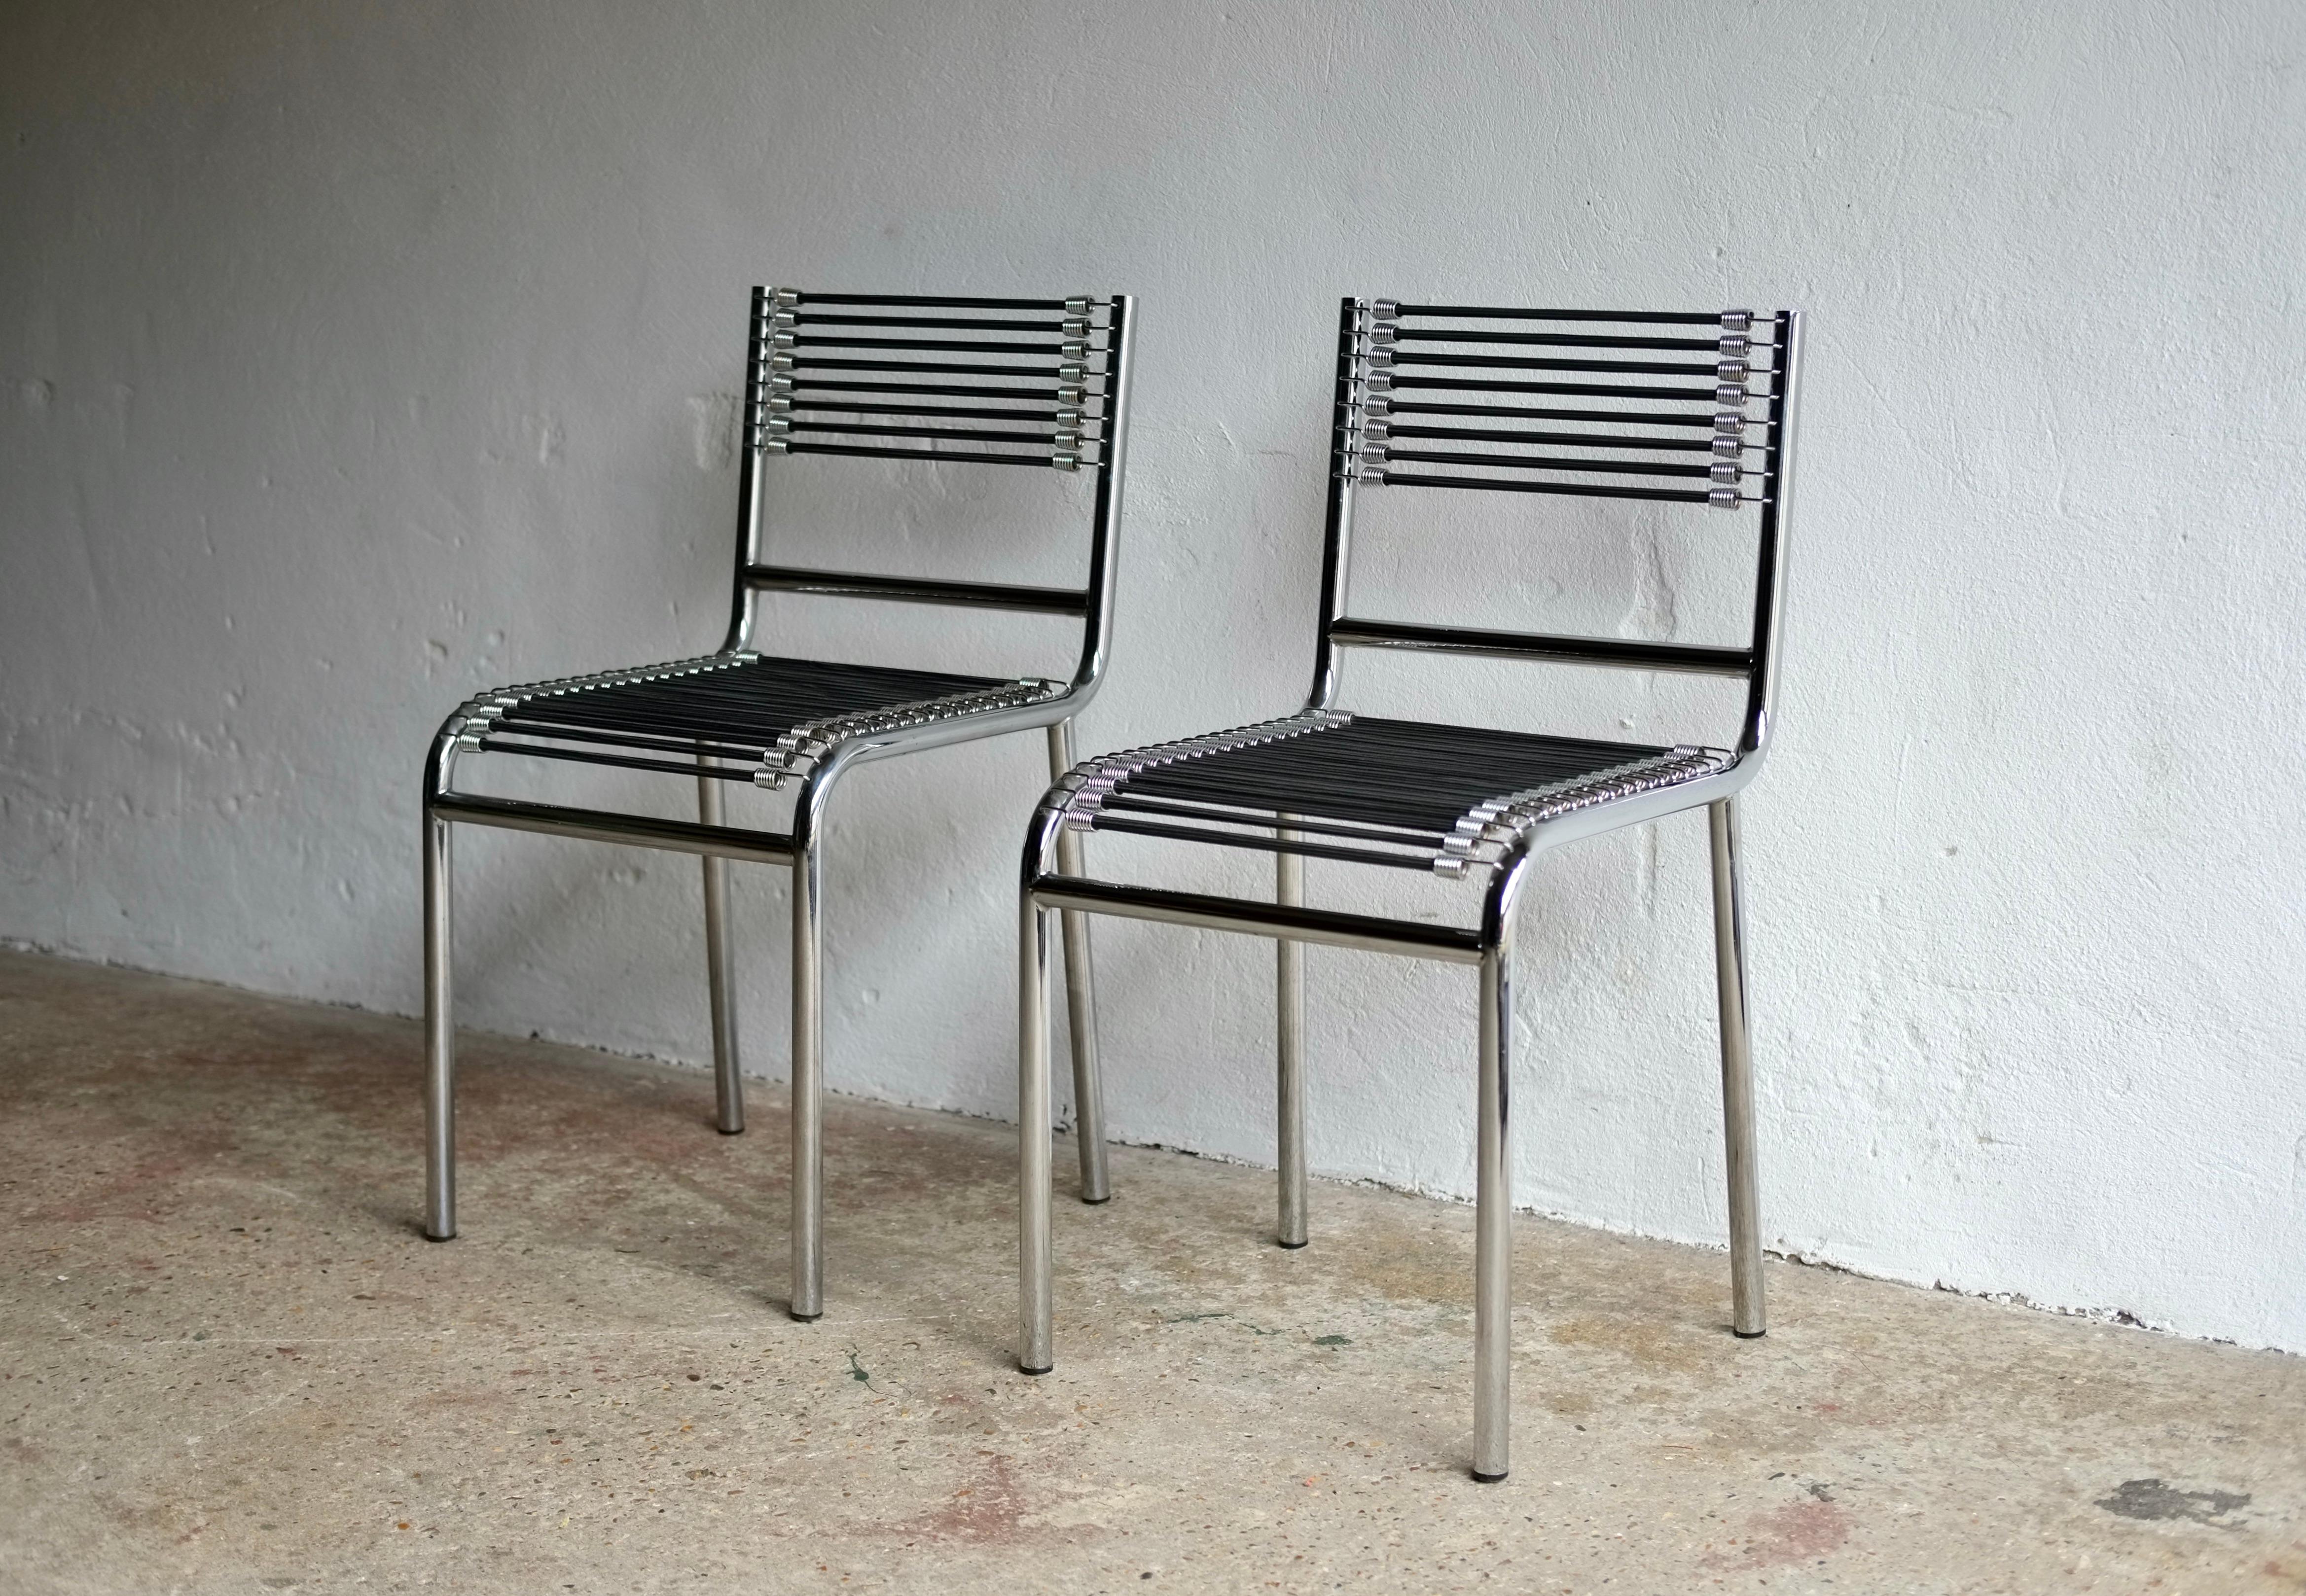 Paire de chaises de salle à manger modèle 101, conçues par l'architecte français René Herbst en 1928 et reproduites dans les années 1990. 

Exposée pour la première fois au Salon d'Automne des Artistes Décorateurs de Paris en 1929.

Tube en acier